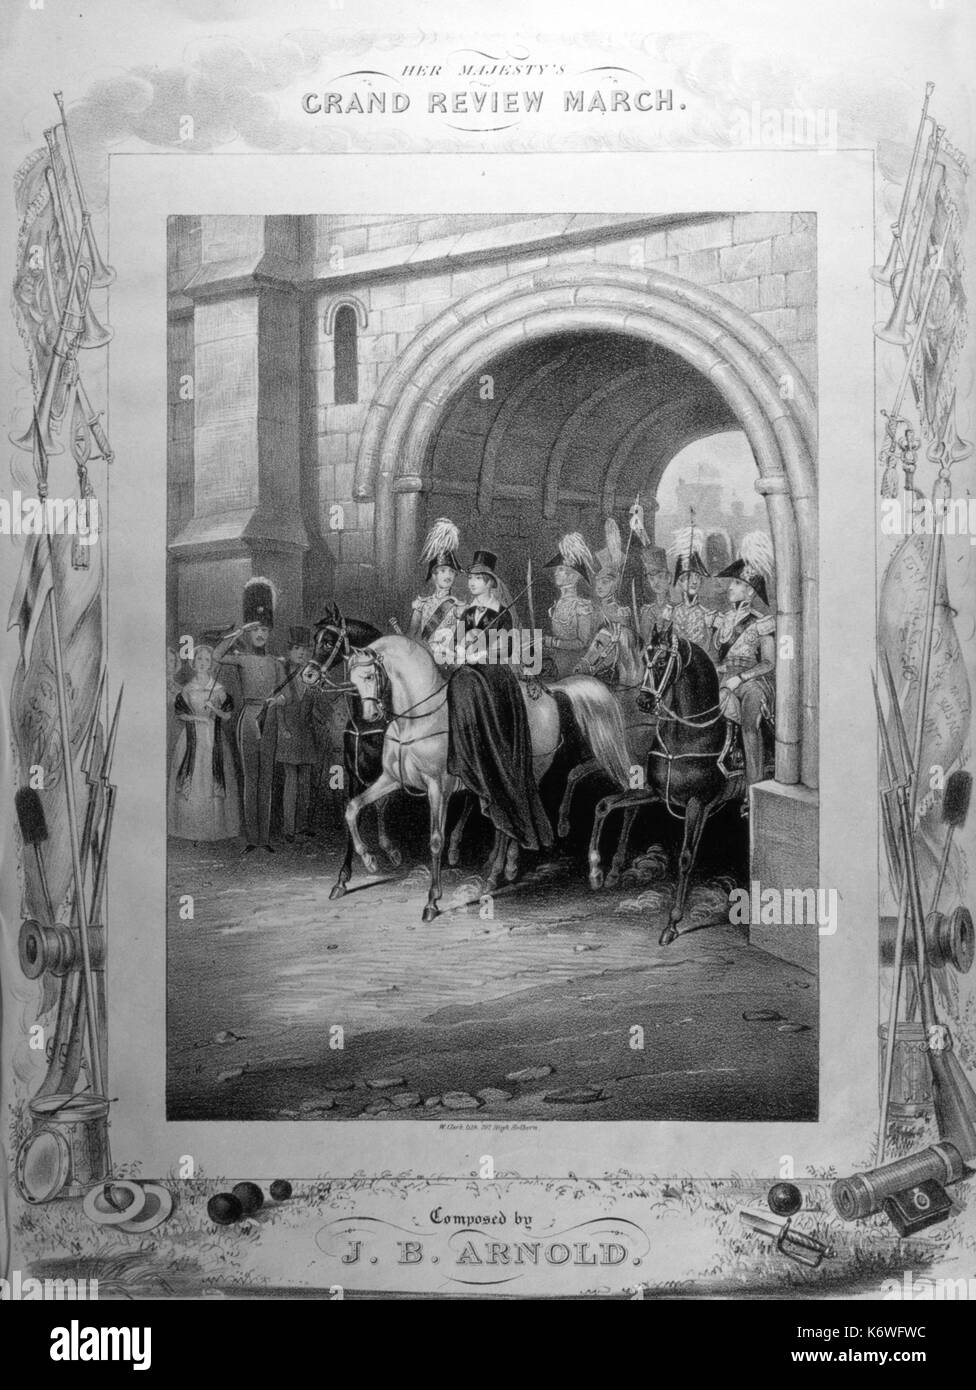 VICTORIA & ALBERT - Grand Revisione Marzo Coperchio del cliente, c1840, mostrando il Victoria & Albert Museum, equitazione attraverso la porta a cavallo. Musica da J B Arnold Foto Stock